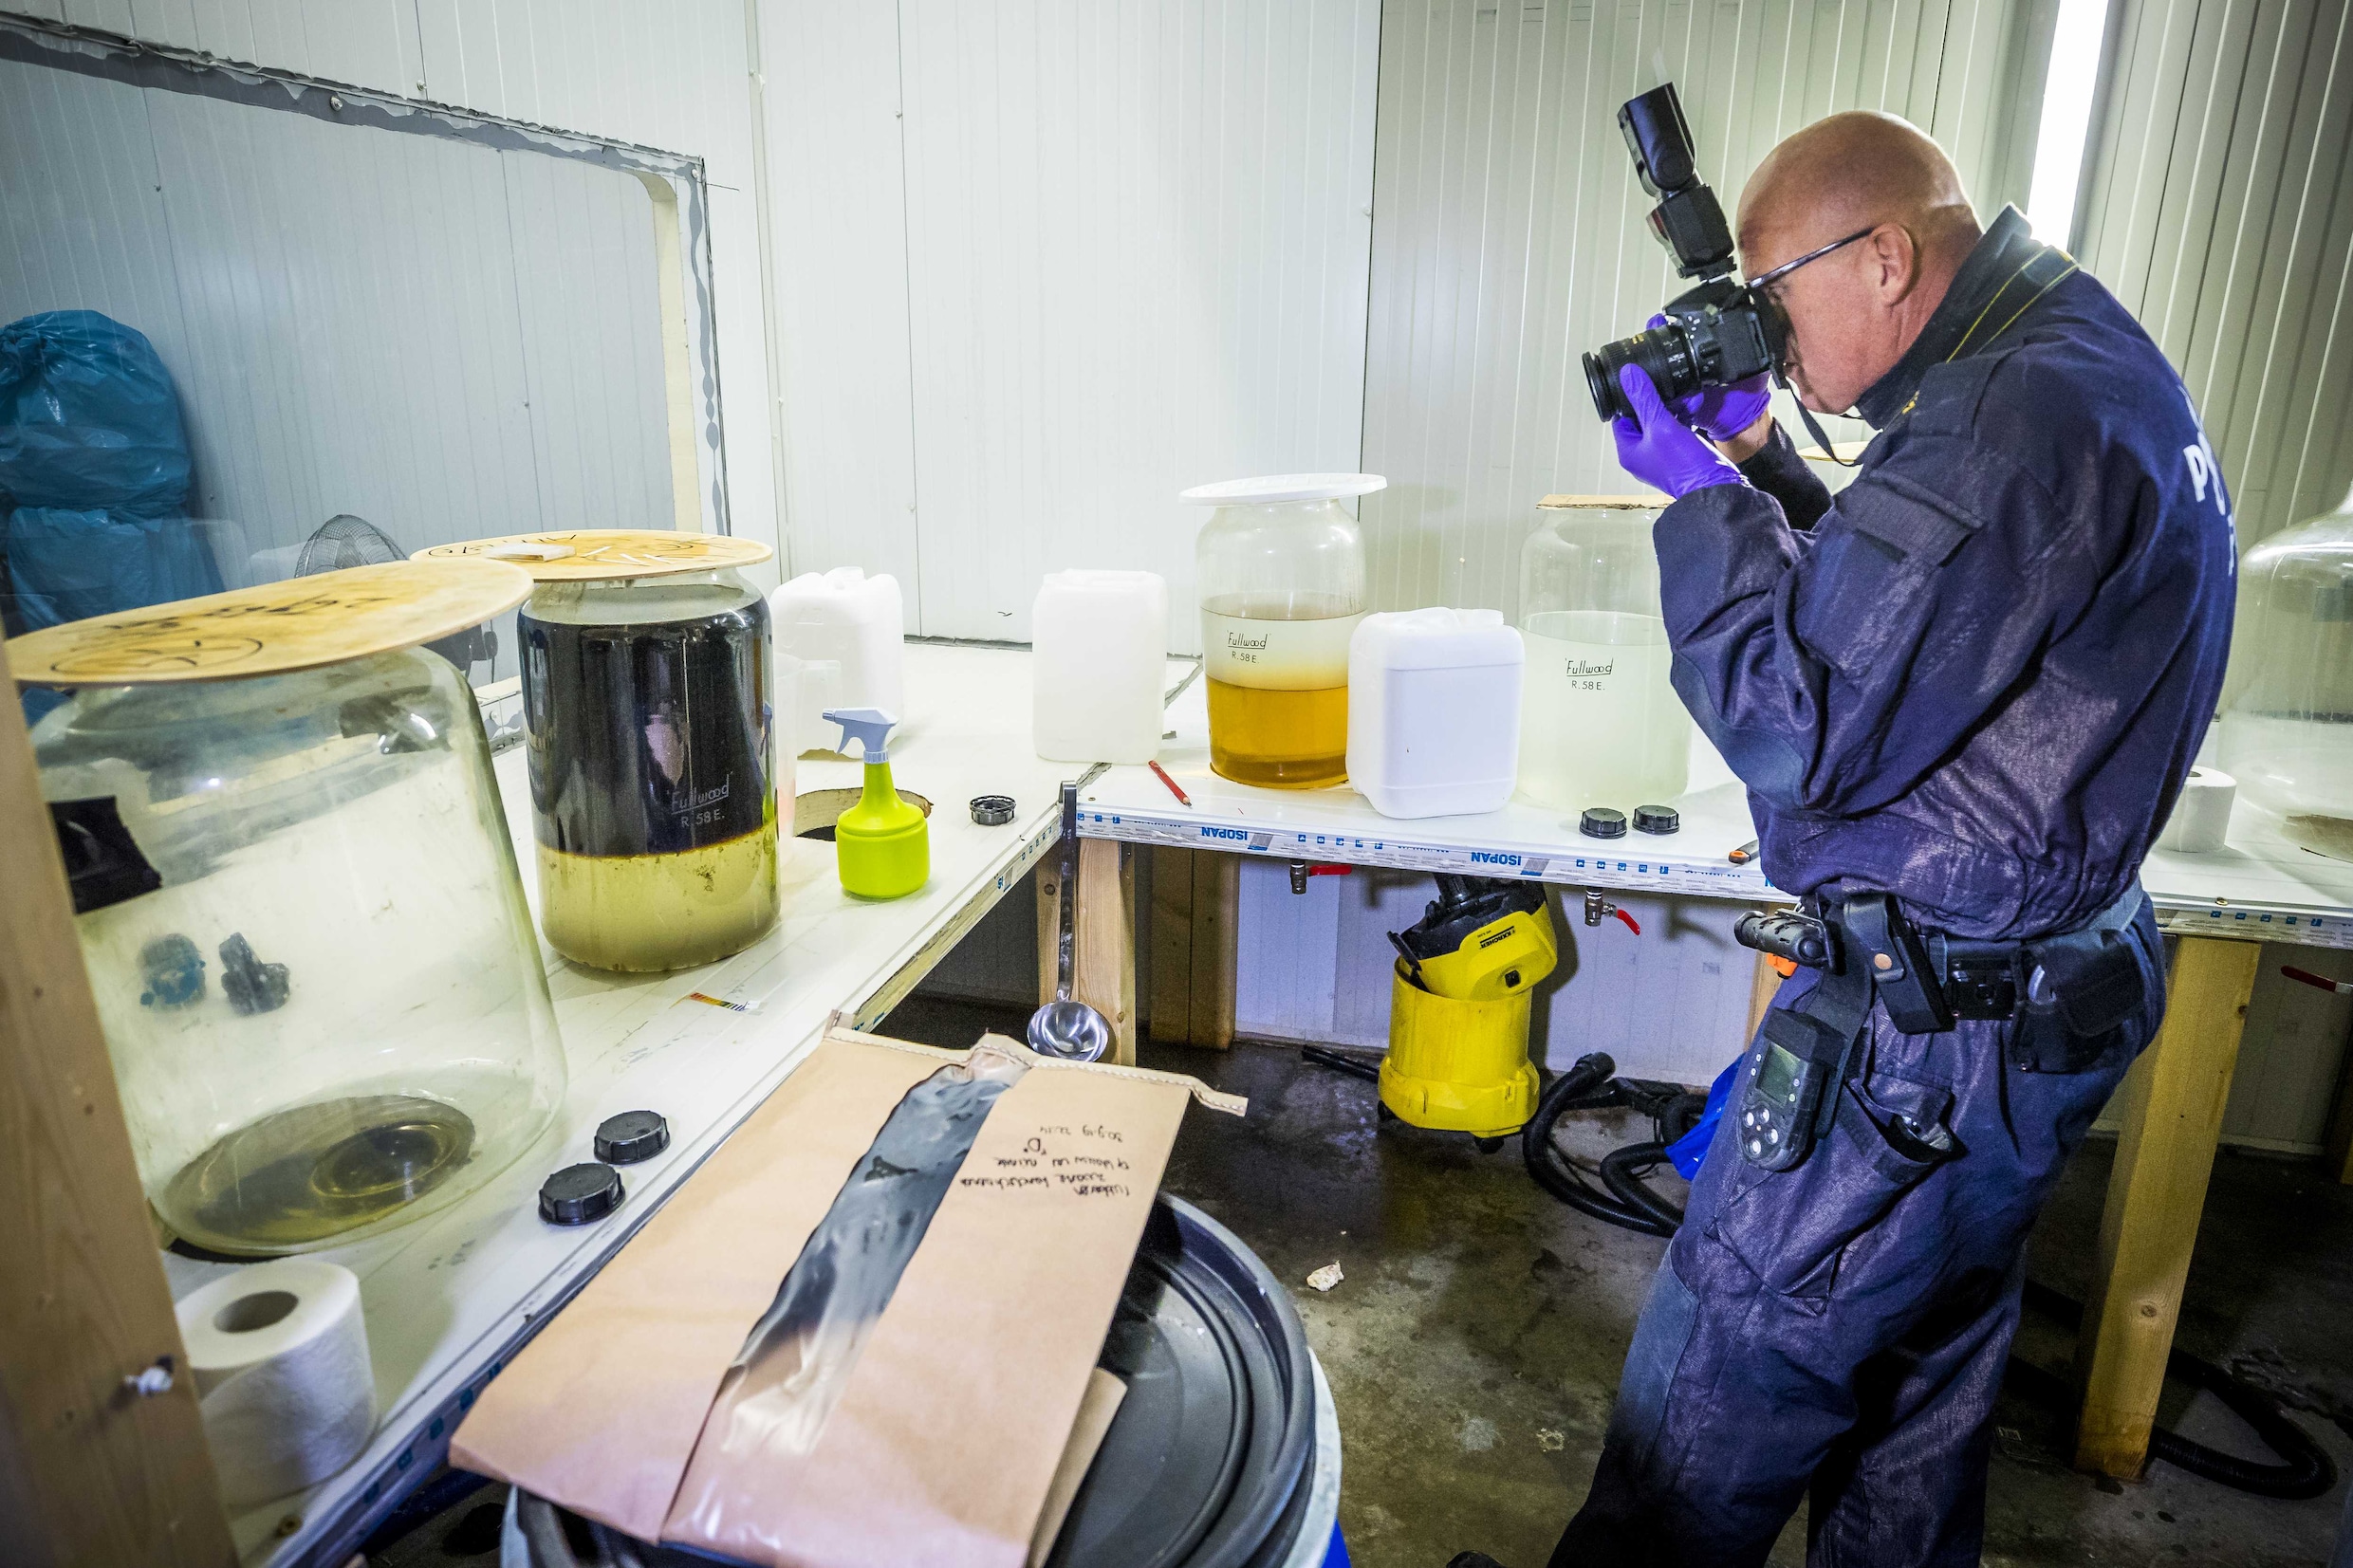 Op één na grootste drugslab in Nederland ontmanteld nabij Belgische grens: ‘Omwonenden aan ramp ontsnapt”